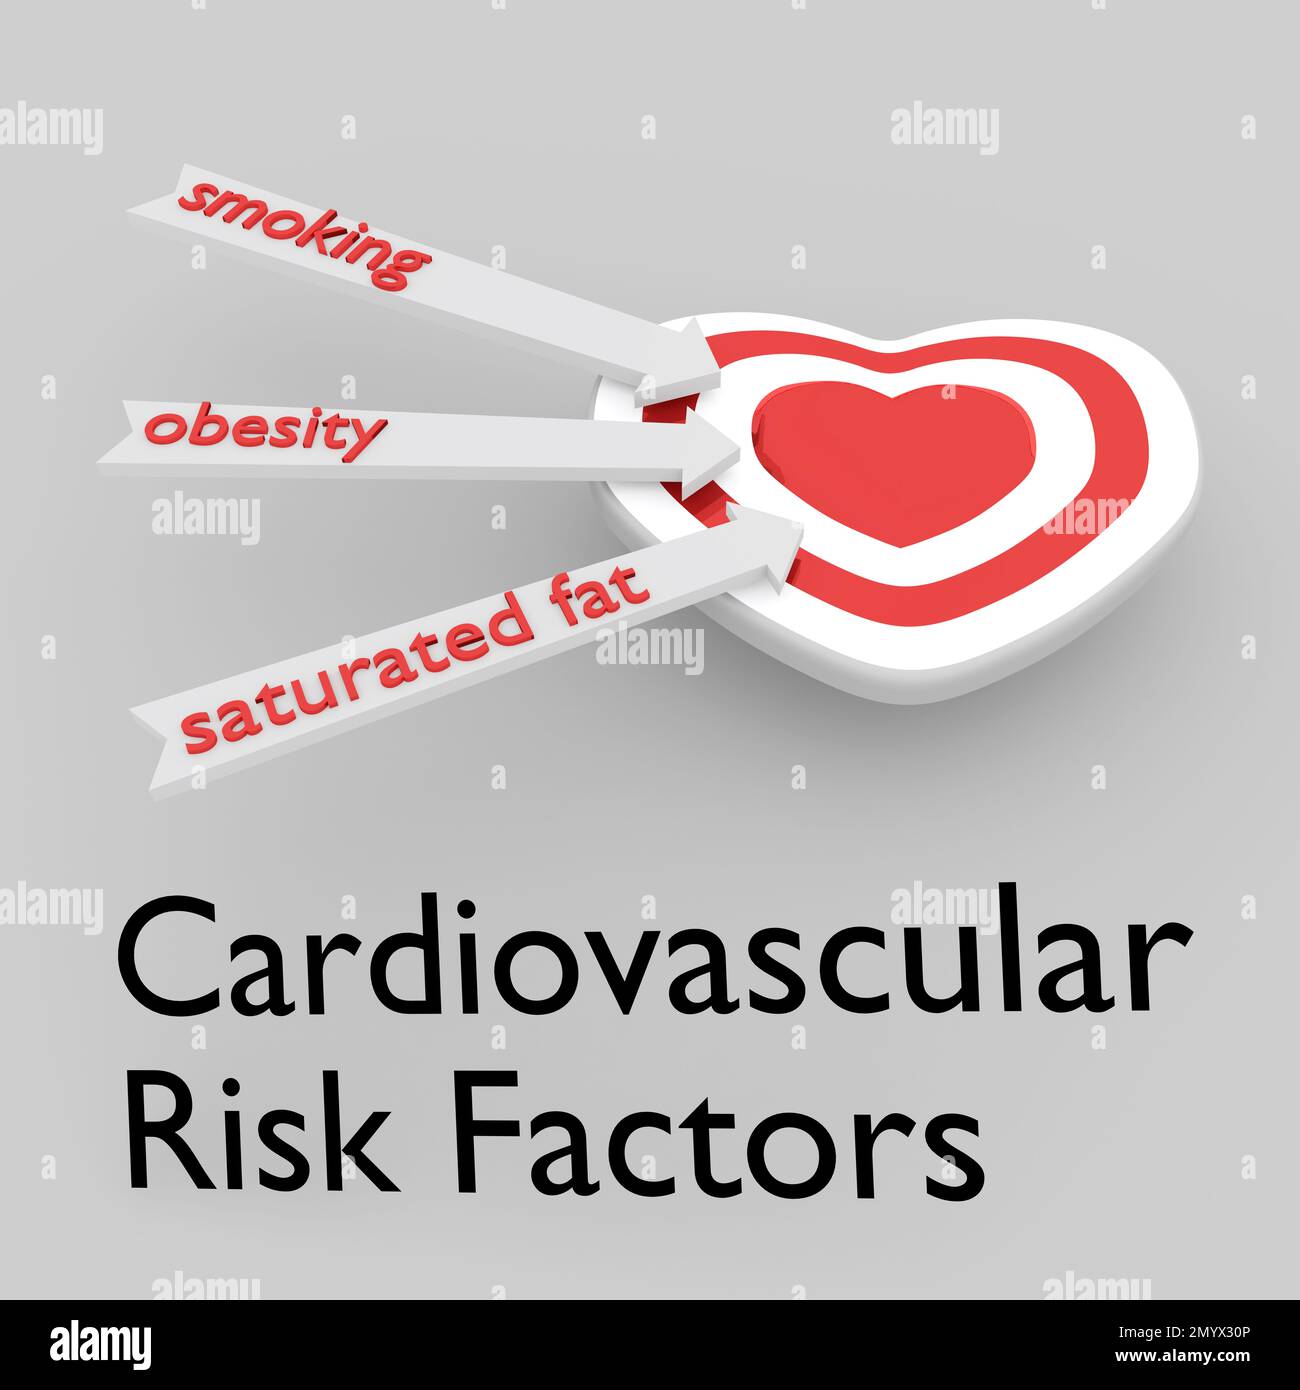 3D Darstellung der kardiovaskulären Risikofaktoren unter einem Zielgeflecht in Form eines symbolischen roten Herzens, zusammen mit drei Pfeilen, die drei Hauptgeflechte umschließen Stockfoto